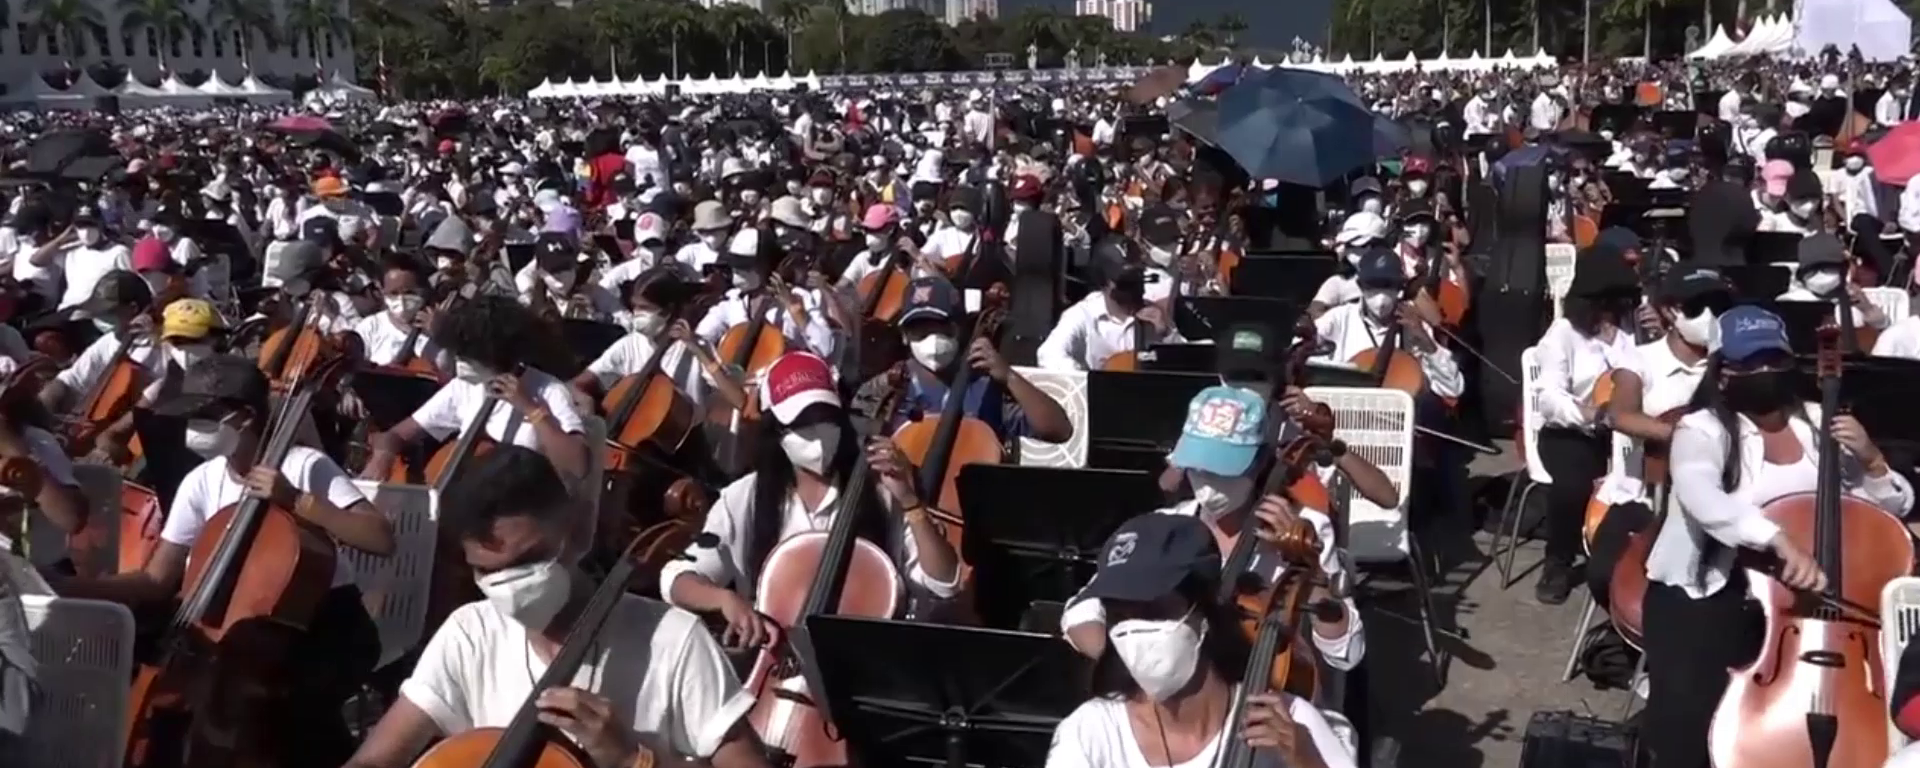 Venezuela, lista para batir el récord de la orquesta más grande del mundo con un megaconcierto - Sputnik Mundo, 1920, 13.11.2021